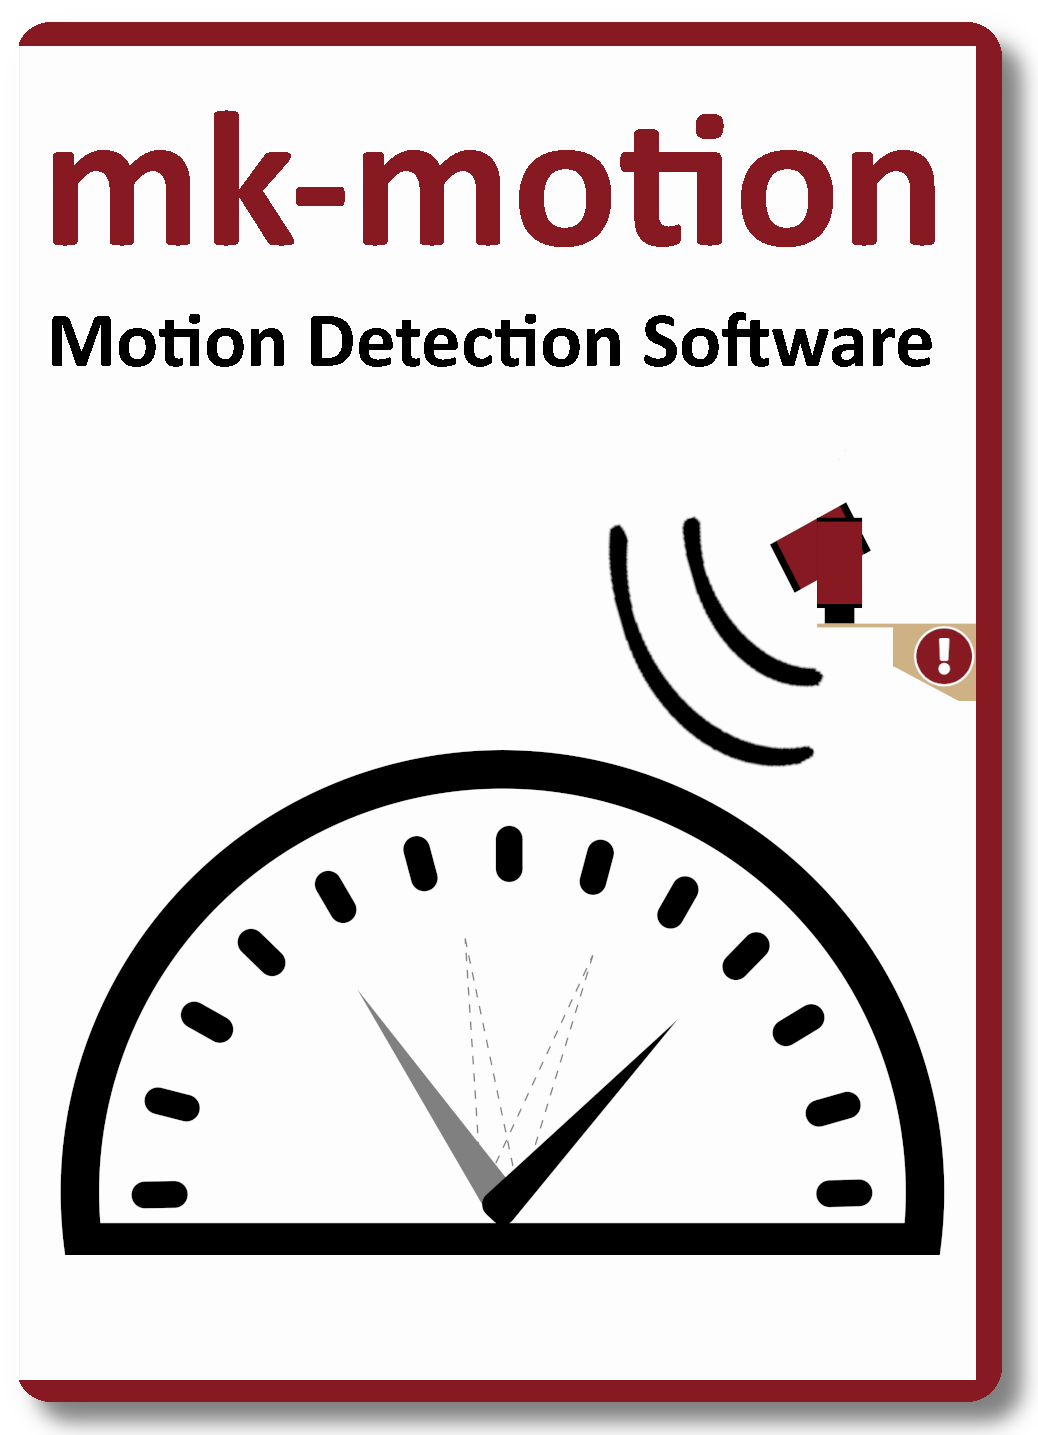 mk-motion Motion Detection Software of mk-messtechnik GmbH